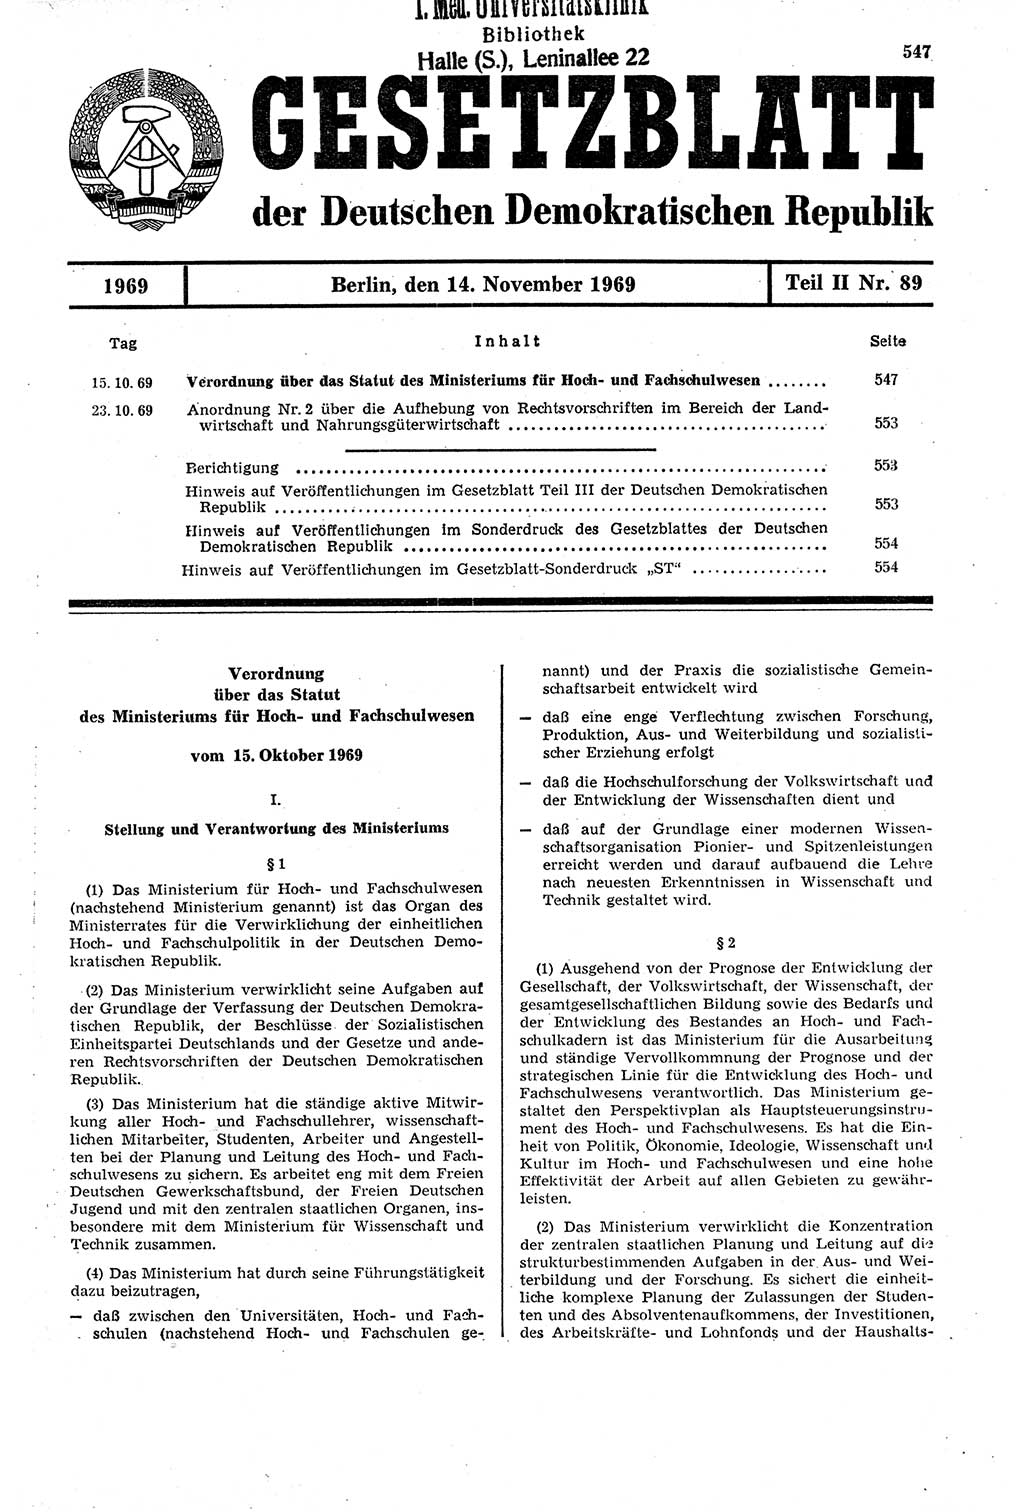 Gesetzblatt (GBl.) der Deutschen Demokratischen Republik (DDR) Teil ⅠⅠ 1969, Seite 547 (GBl. DDR ⅠⅠ 1969, S. 547)